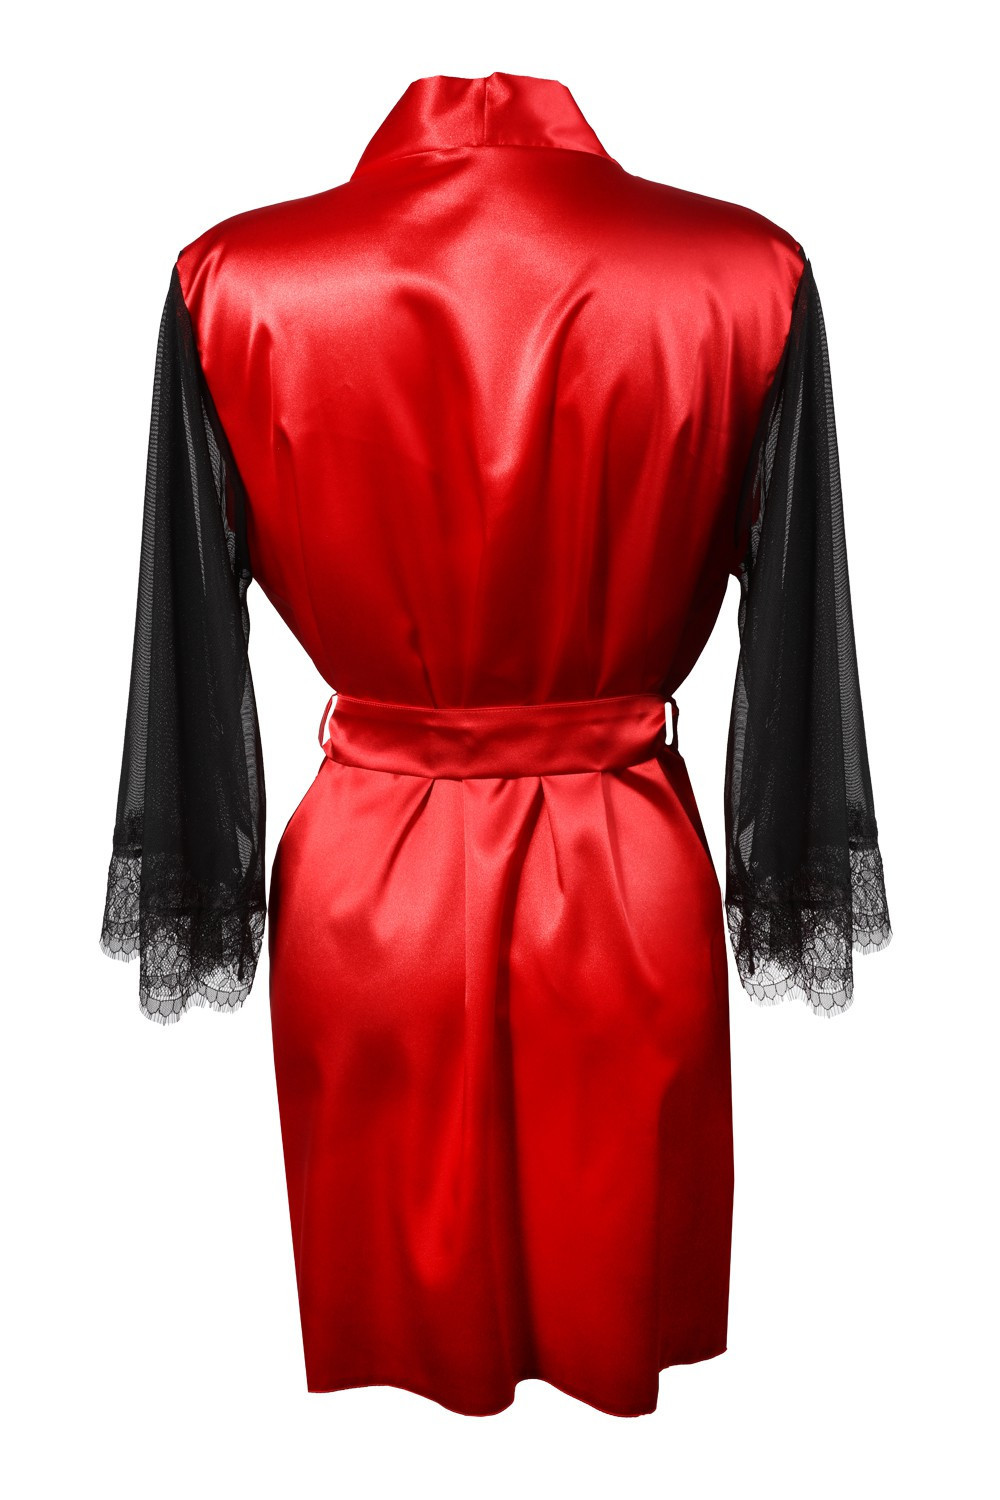 DKaren Housecoat Bonnie Red S červená